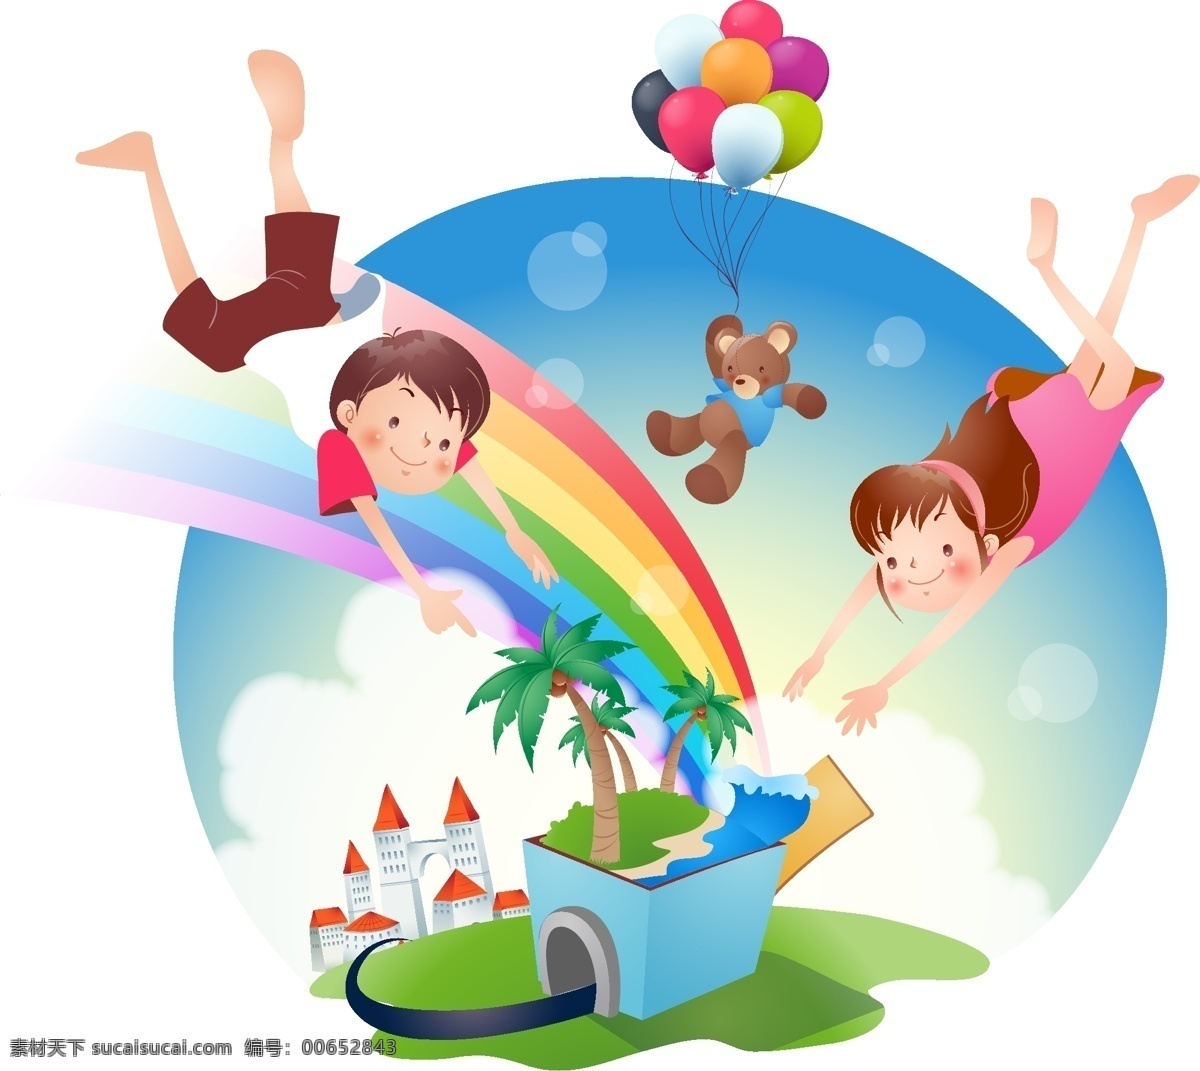 快乐学生 矢量快乐暑假 矢量人物 学生 孩子 游玩 夏天 儿童幼儿 矢量图库 矢量